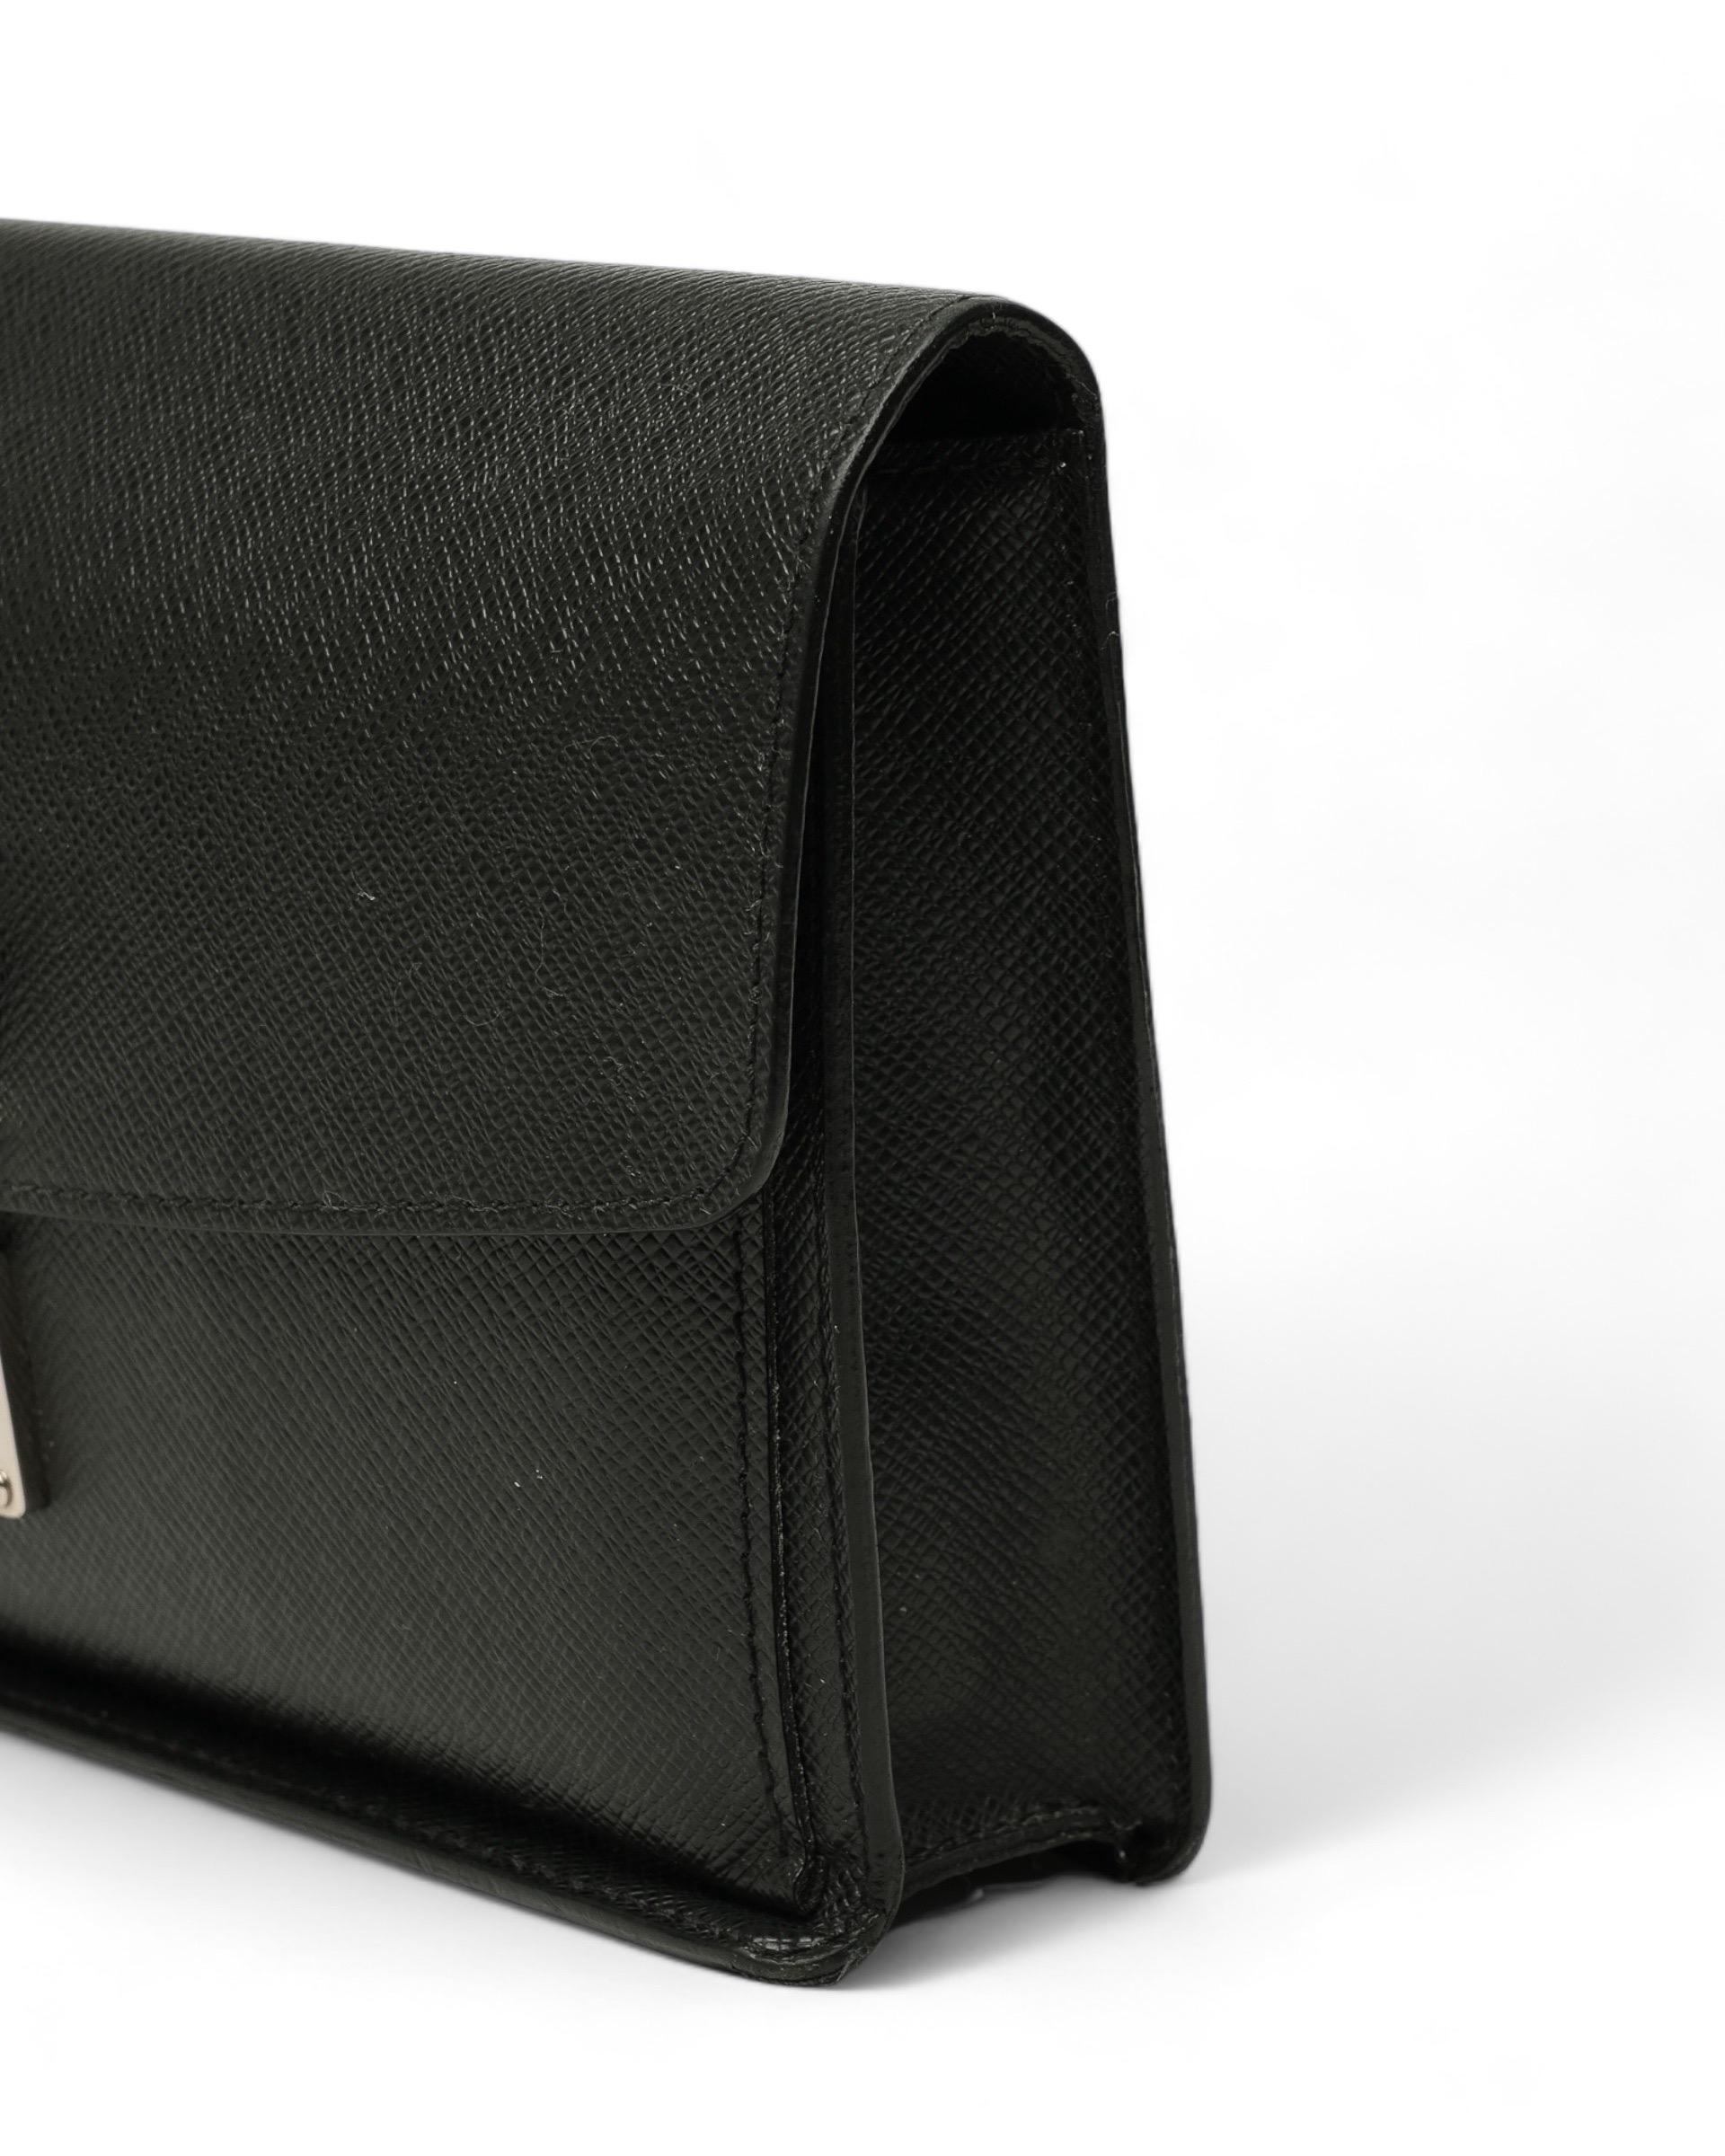 Clutch firmata Louis Vuitton, modello Belaia, misura MM, realizzata in pelle taiga nera con hardware argentati. Dotata di una patta frontale con chiusura ad incastro, internamente rivestita in pelle tono su tono, capiente per l’essenziale. Munita di